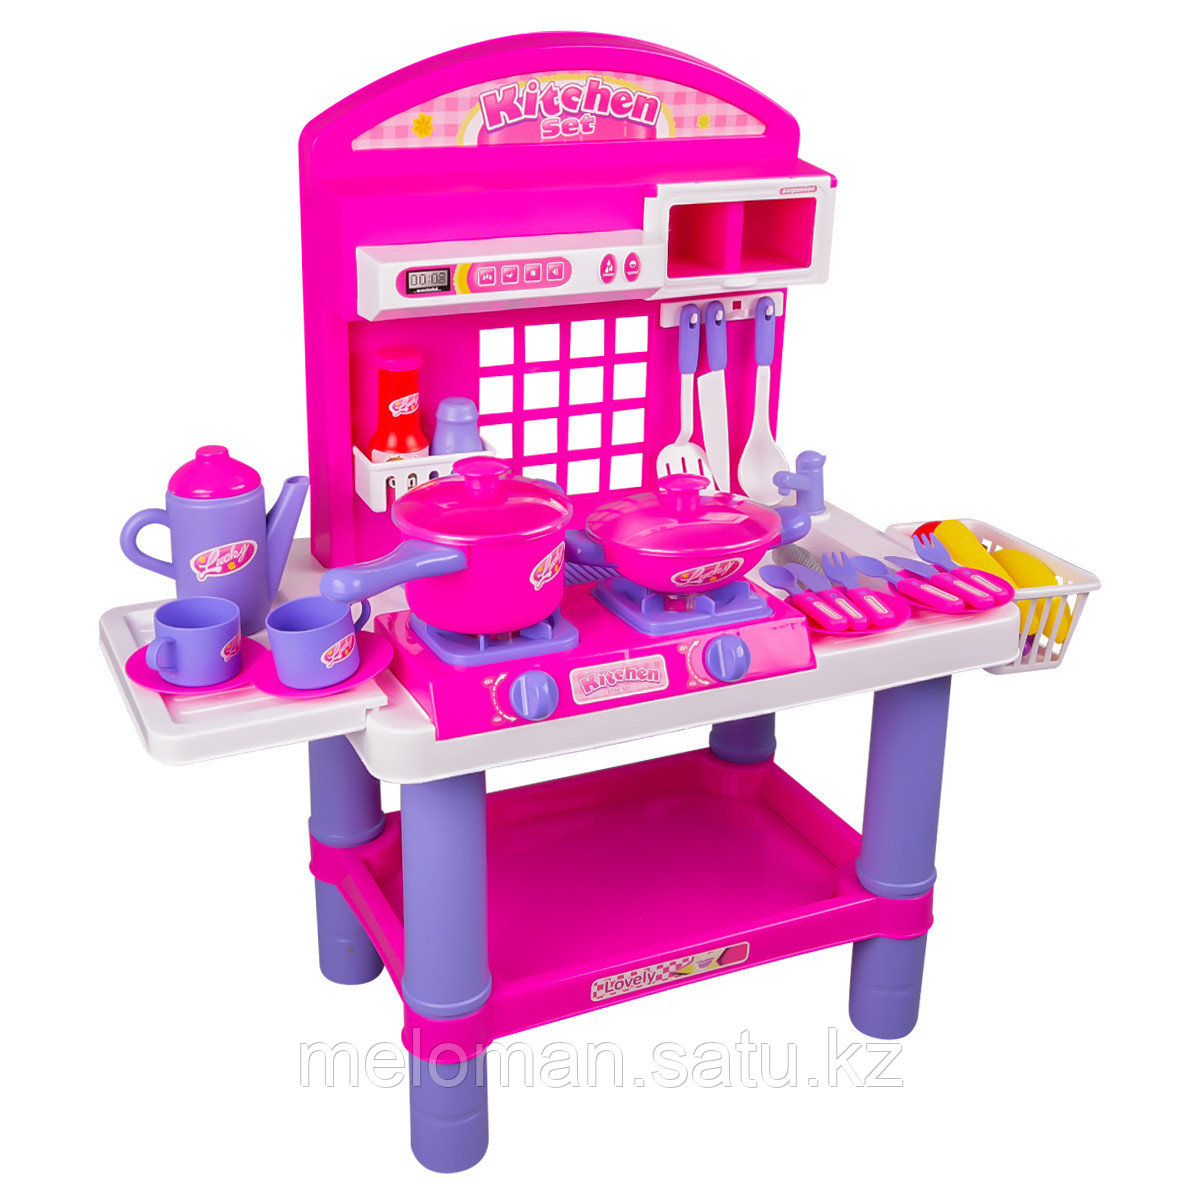 Besty: Игр.н-р "Кухня", со светом и звуком, розовый